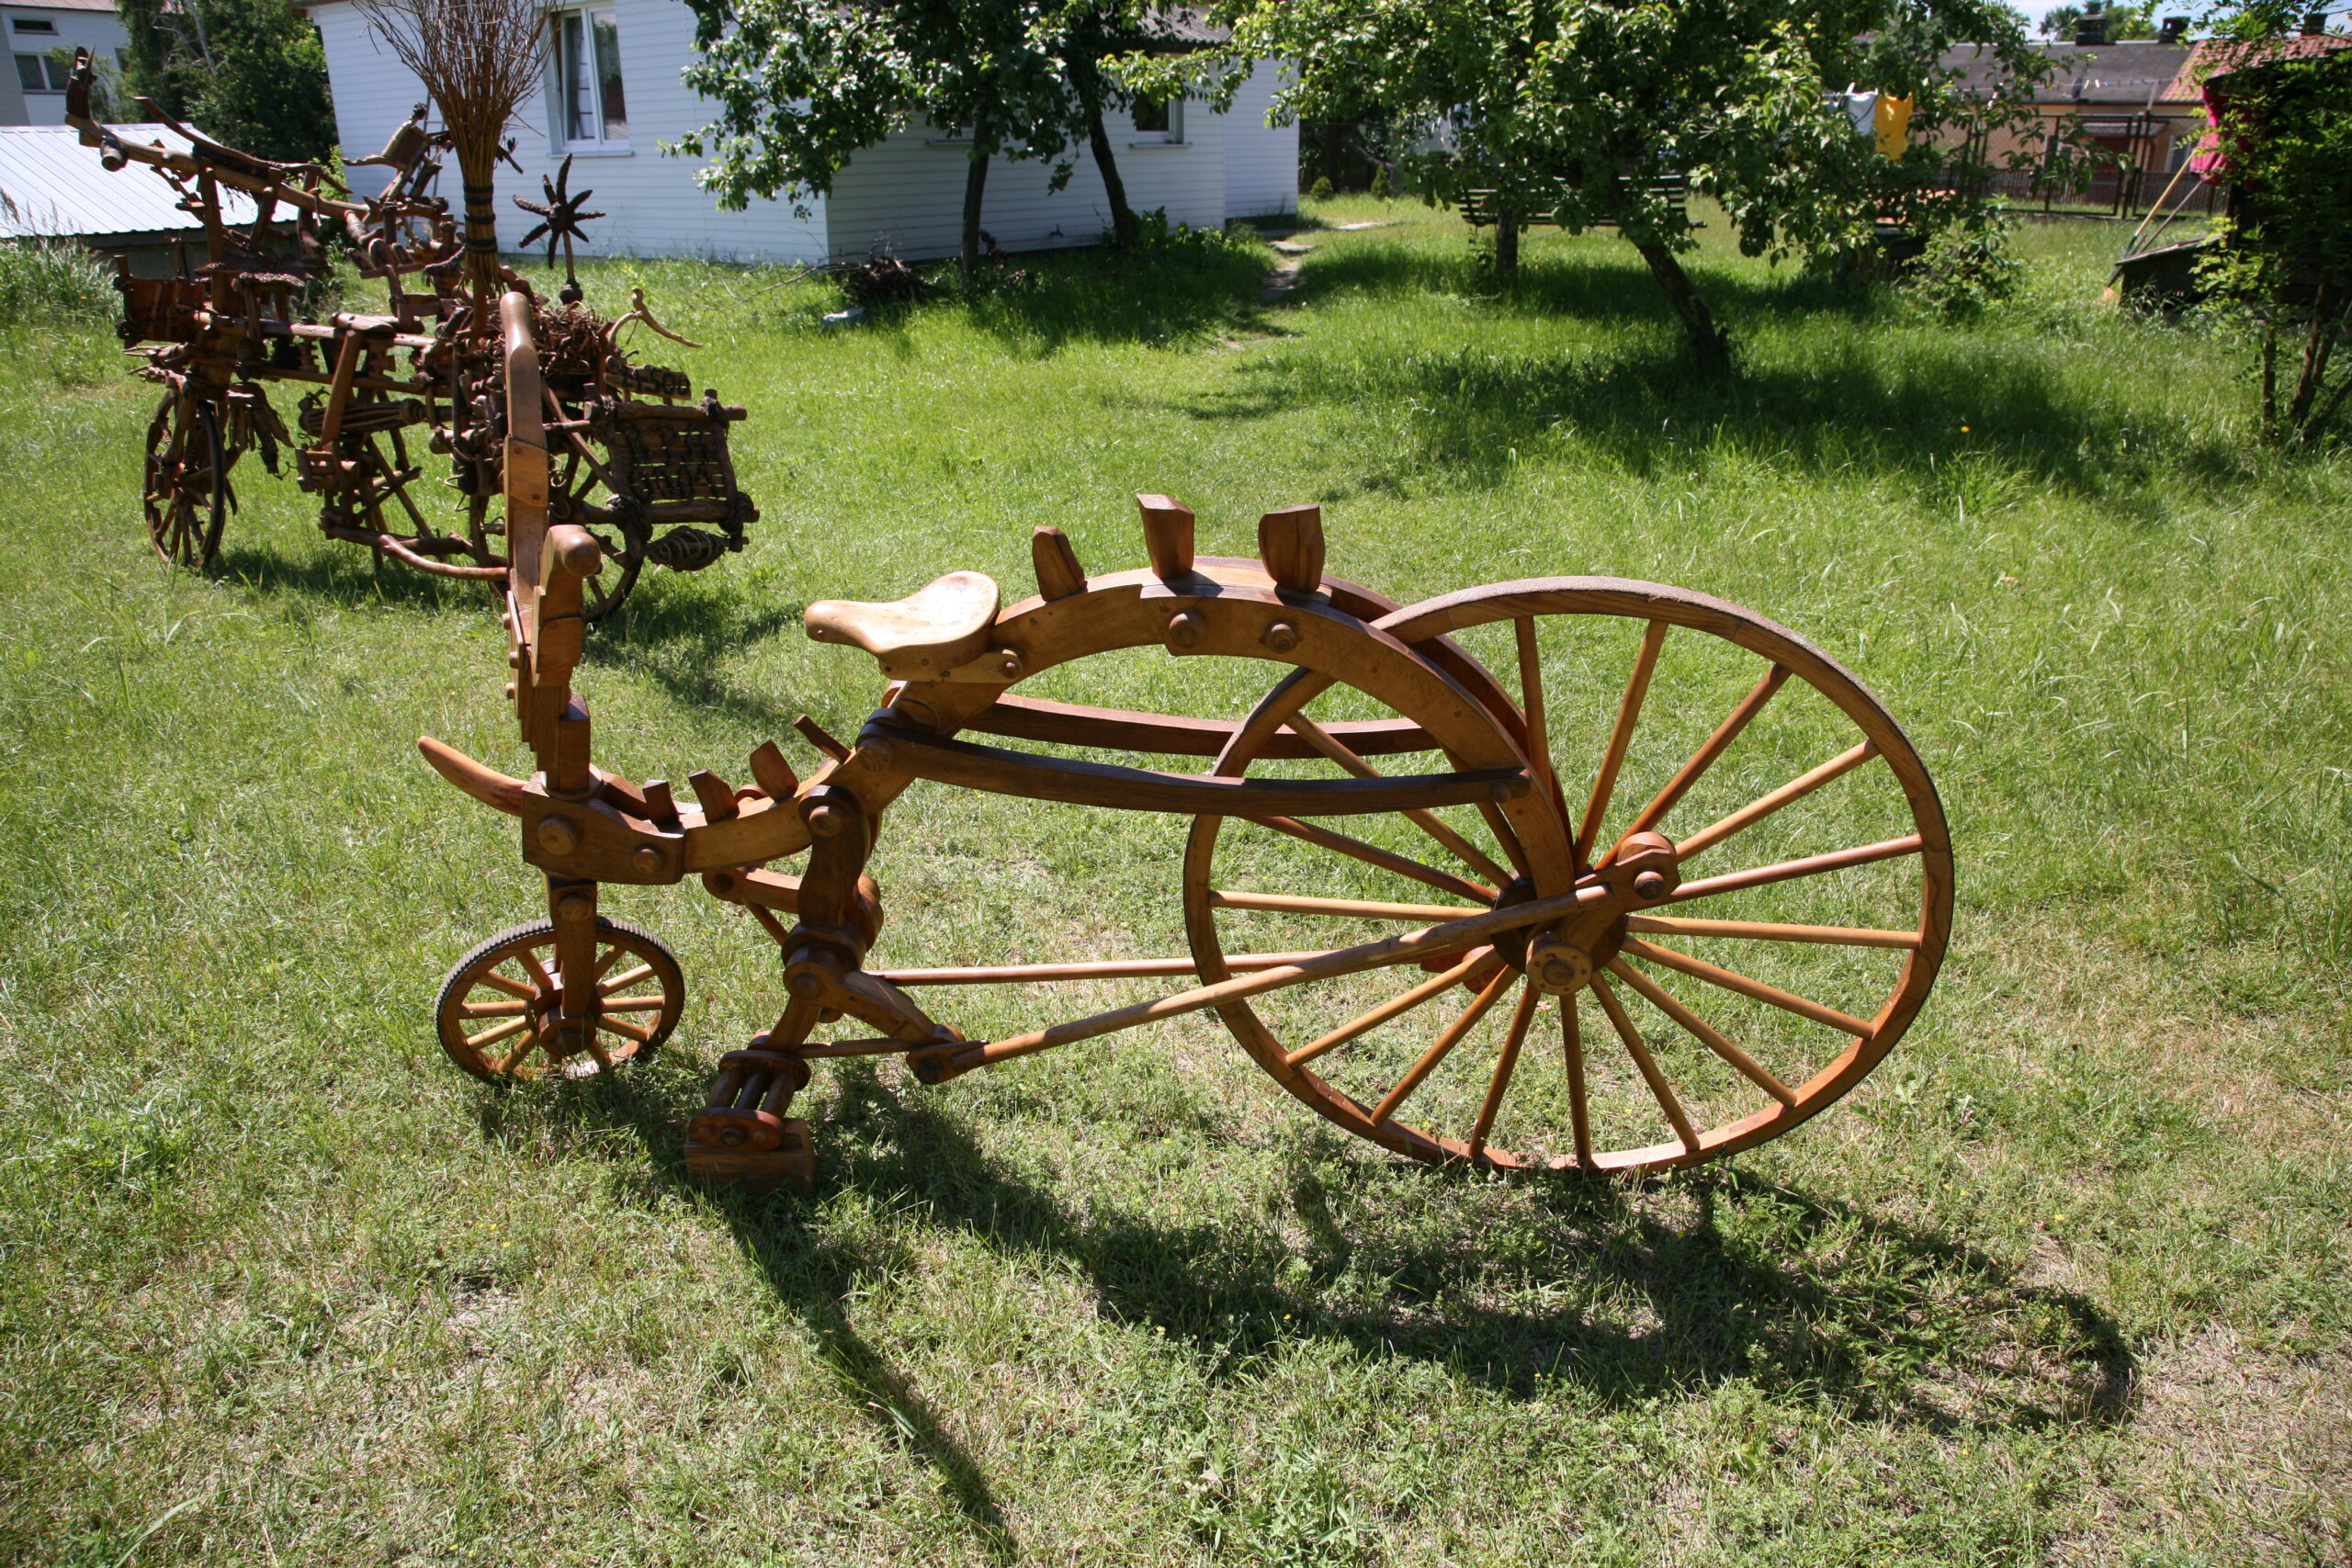 Rower w całości wykonany z drewna, stojący na trawniku.